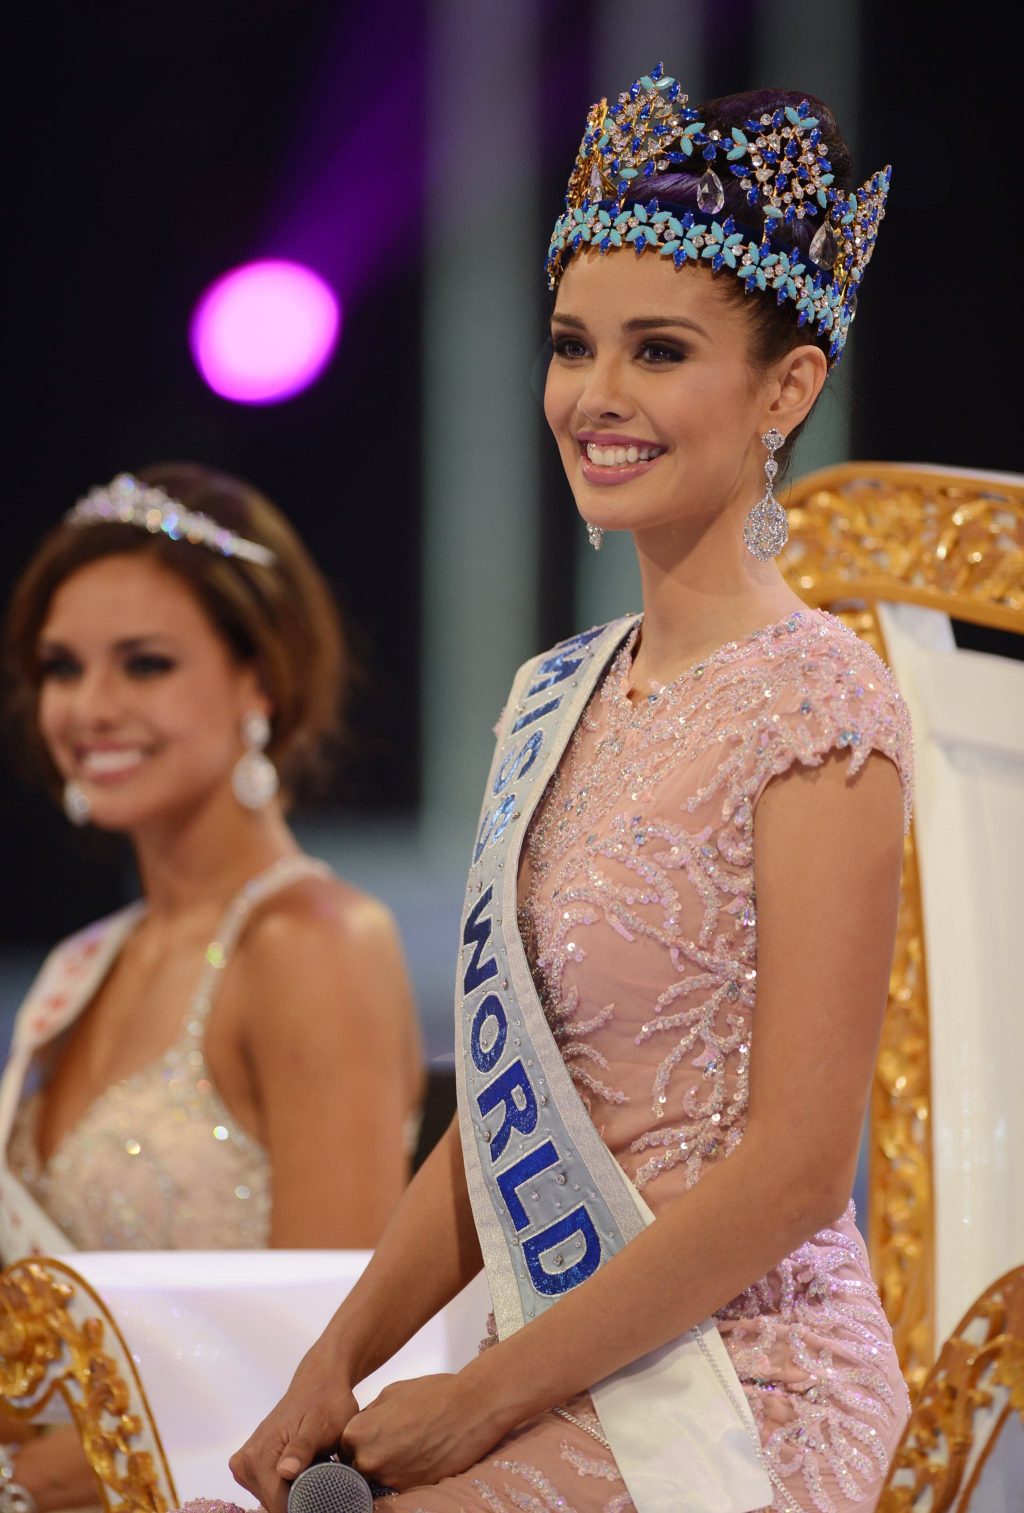 Lịch sử của cuộc thi sắc đẹp lâu đời nhất: Hoa hậu Thế giới - ELLE VN